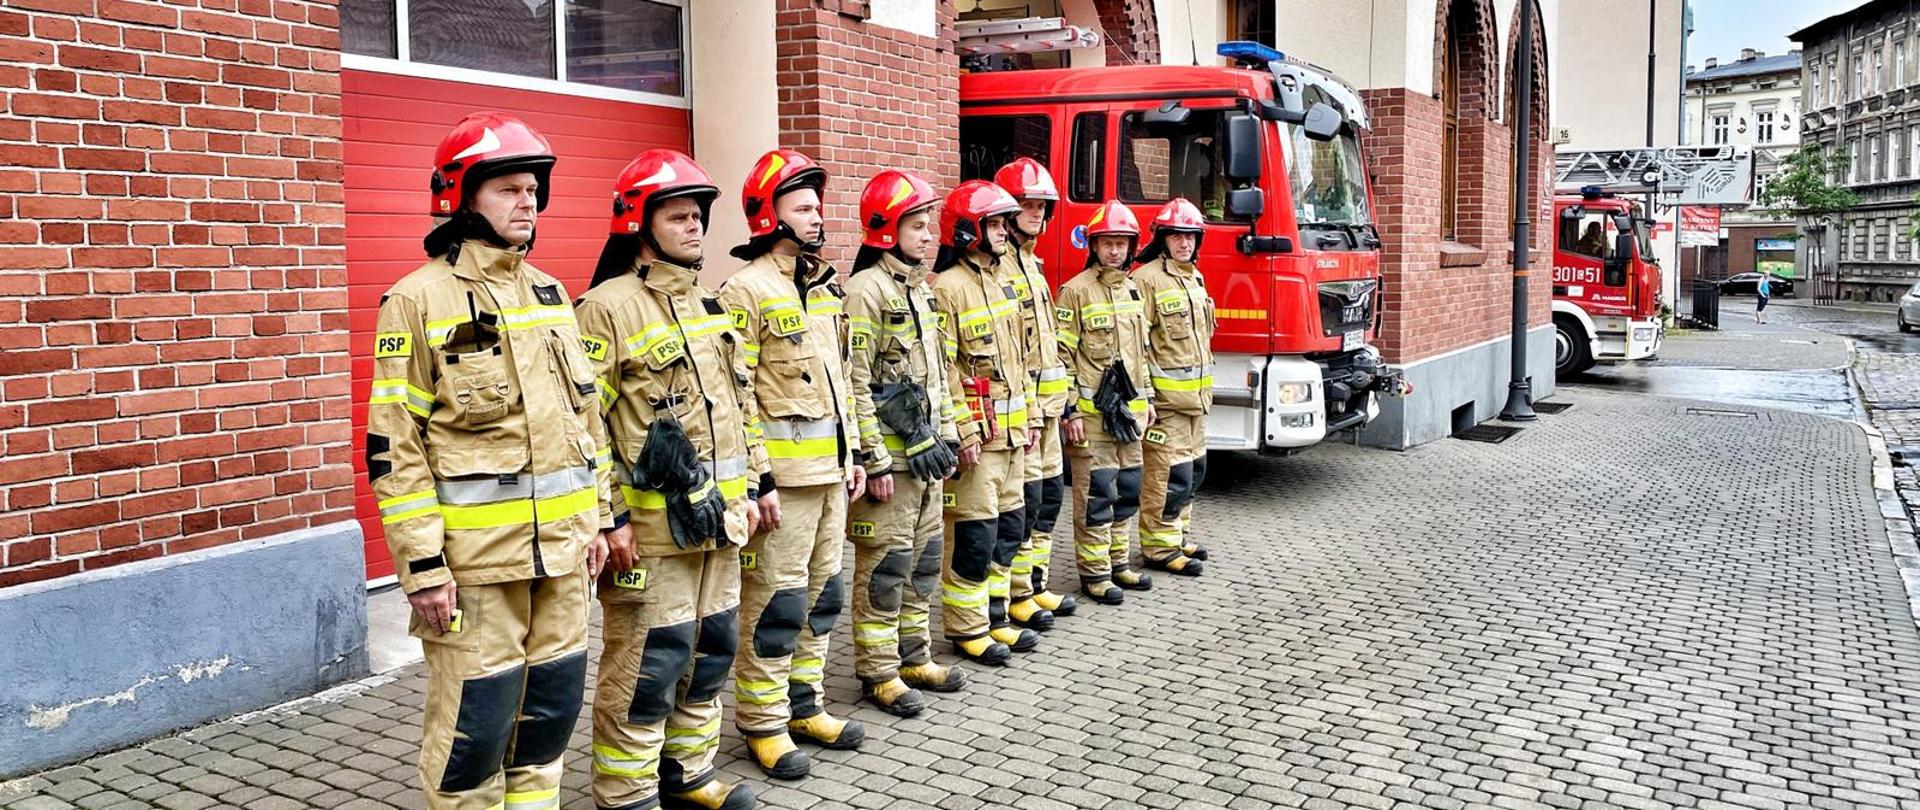 Strażacy stojący w szeregu w żółtych ubraniach specjalnych przed budynkiem Jednostki Ratowniczo-Gaśniczej nr 1 w Bydgoszczy, w tle elewacja frontowa budynku i widok częściowo wystawionych dwóch wozów pożarniczych.